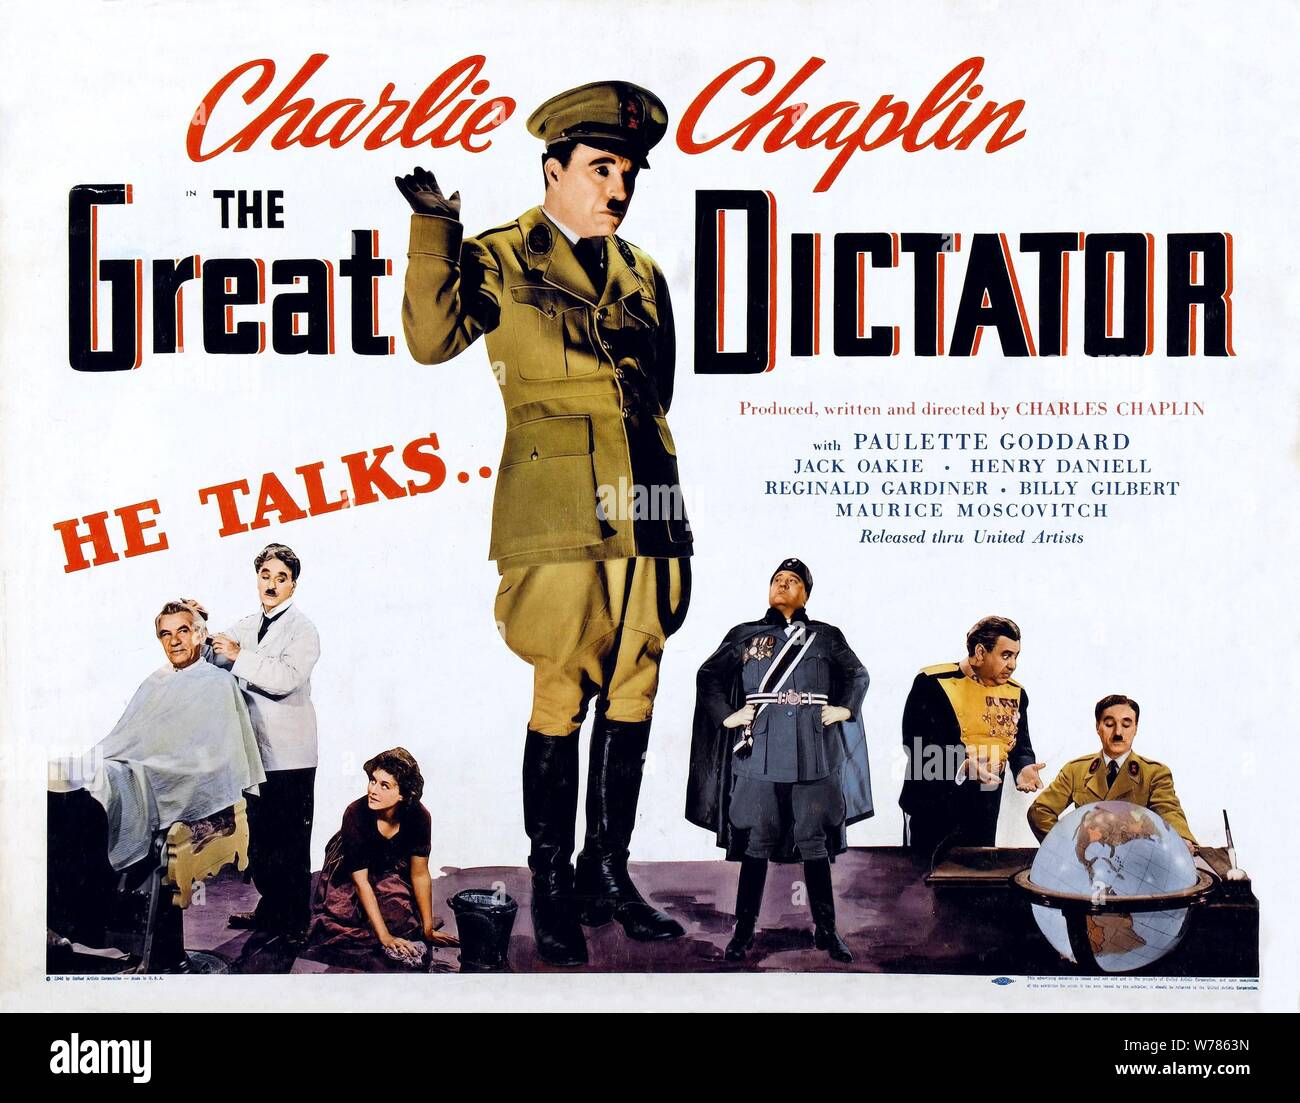 L'affiche de Charles Chaplin, le dictateur, 1940 Banque D'Images